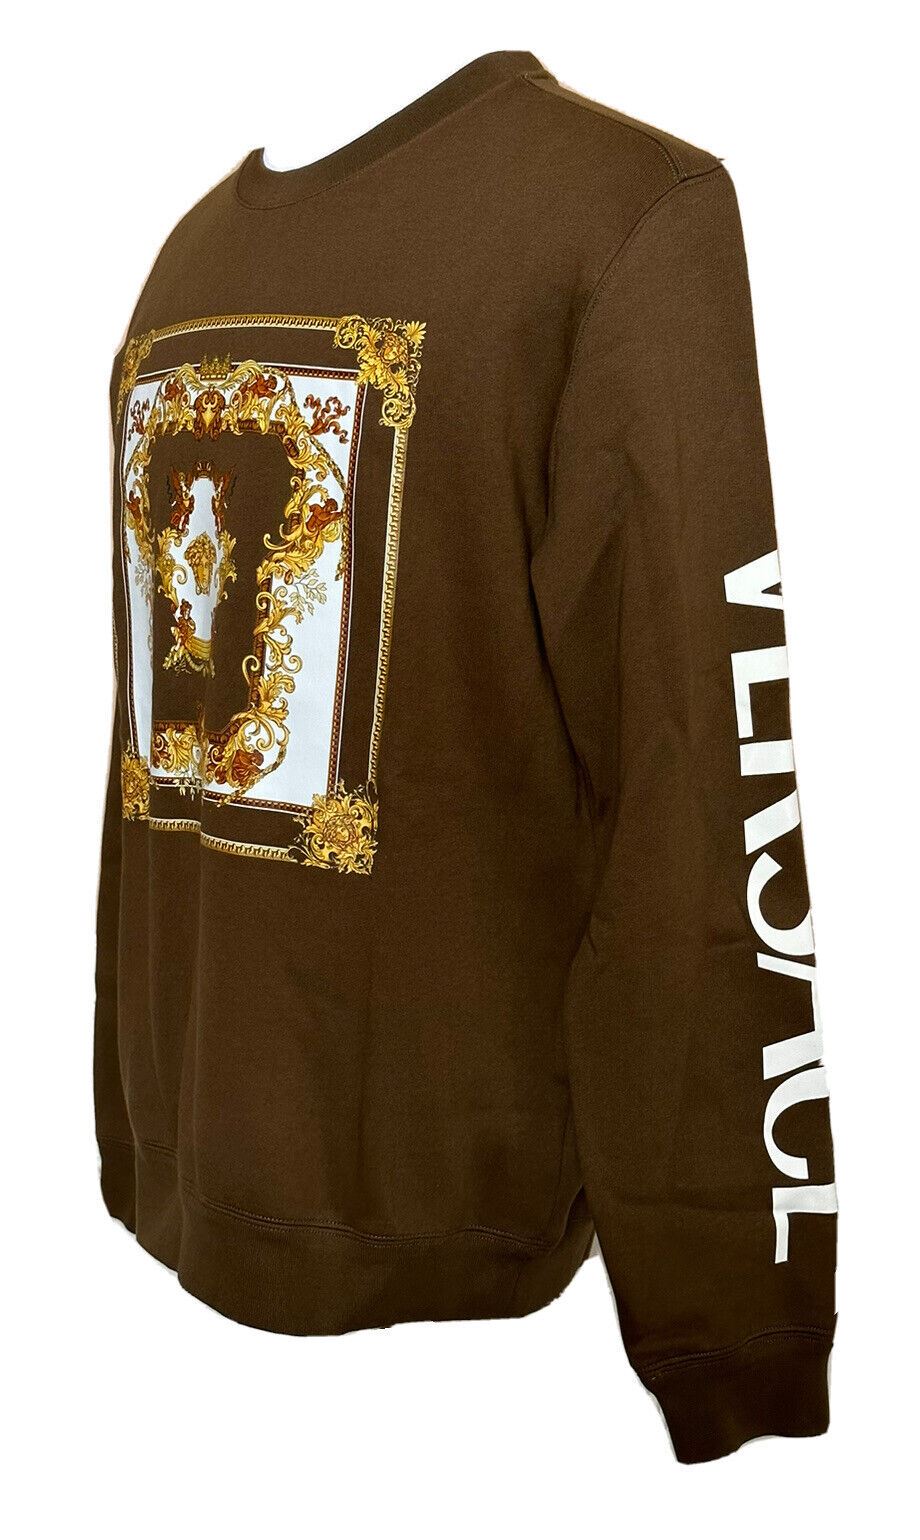 NWT $850 Versace Medusa Renaissance Khaki Cotton Sweatshirt 2XL 1008282